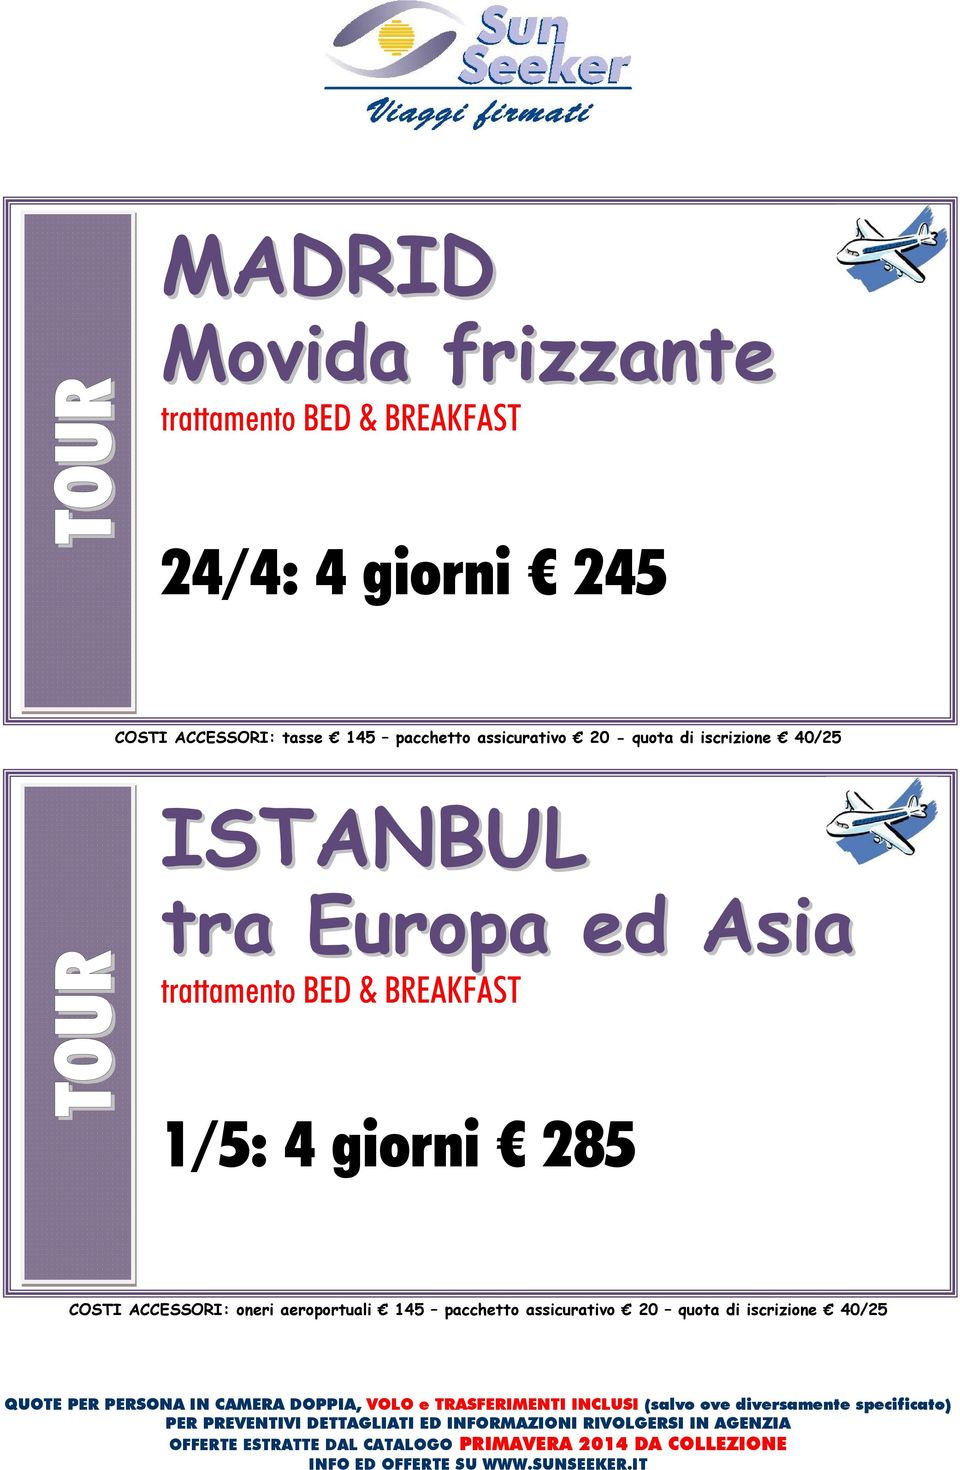 ISTANBUL tra Europa ed Asia trattamento BED & BREAKFAST 1/5: 4 giorni 285 COSTI